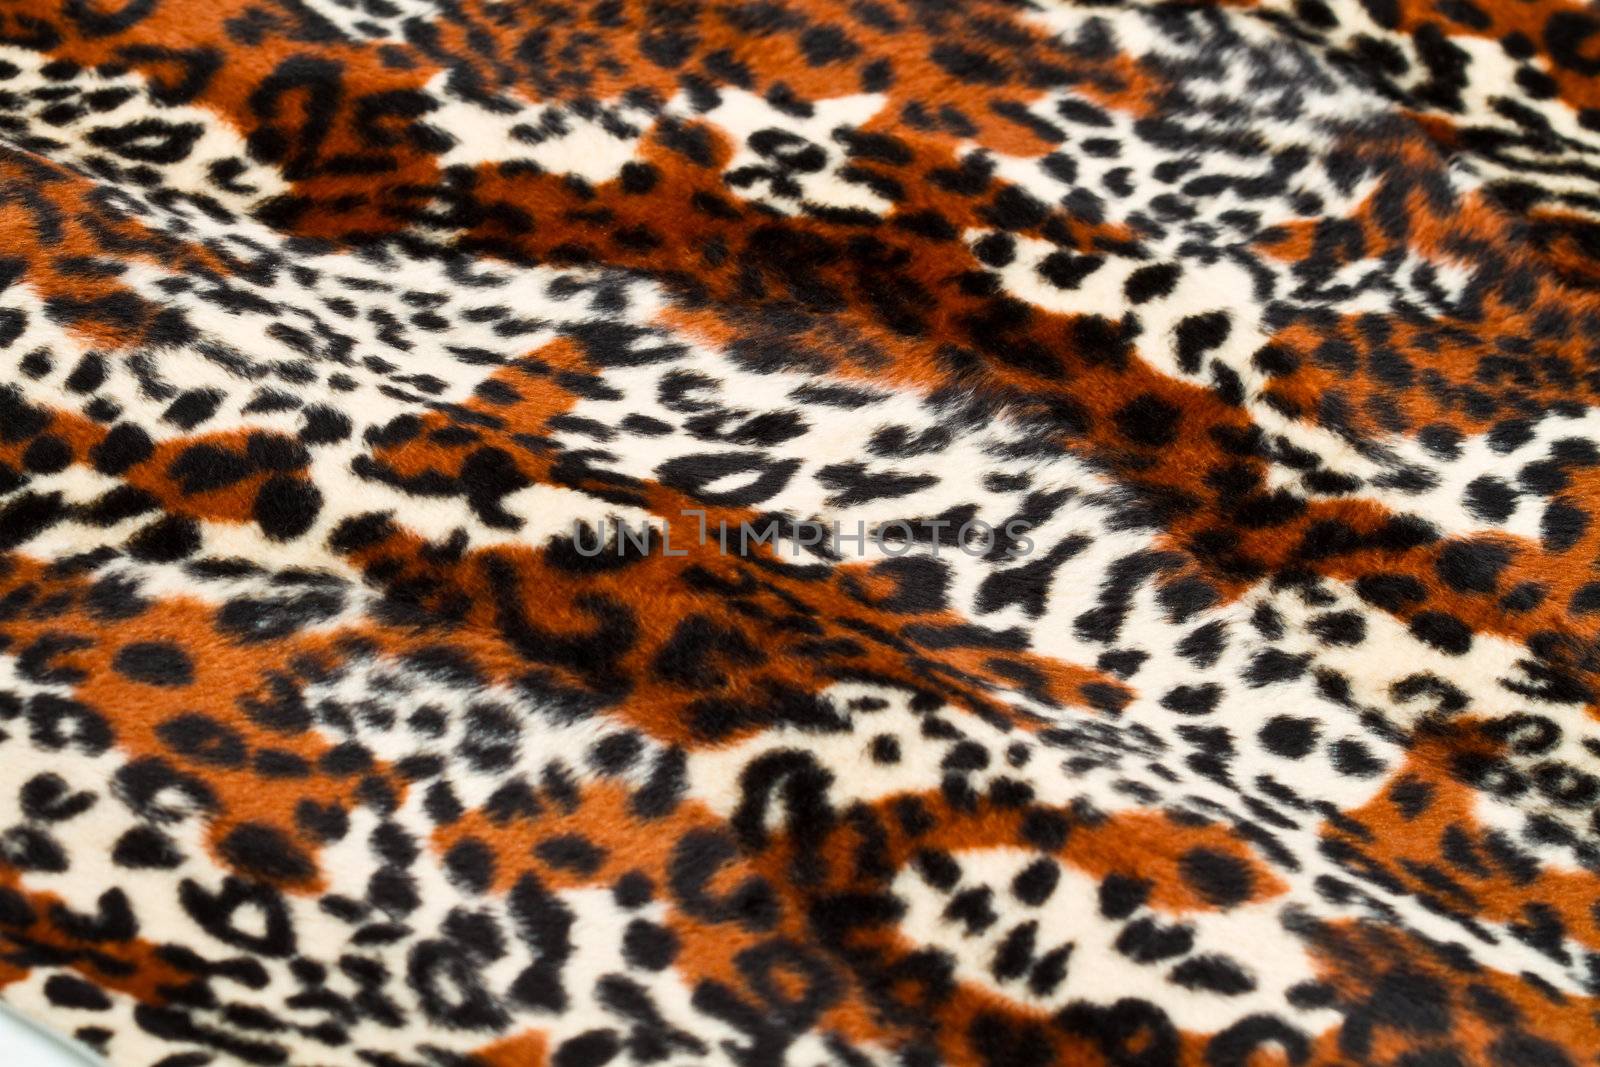  leopard skin pattern by lsantilli